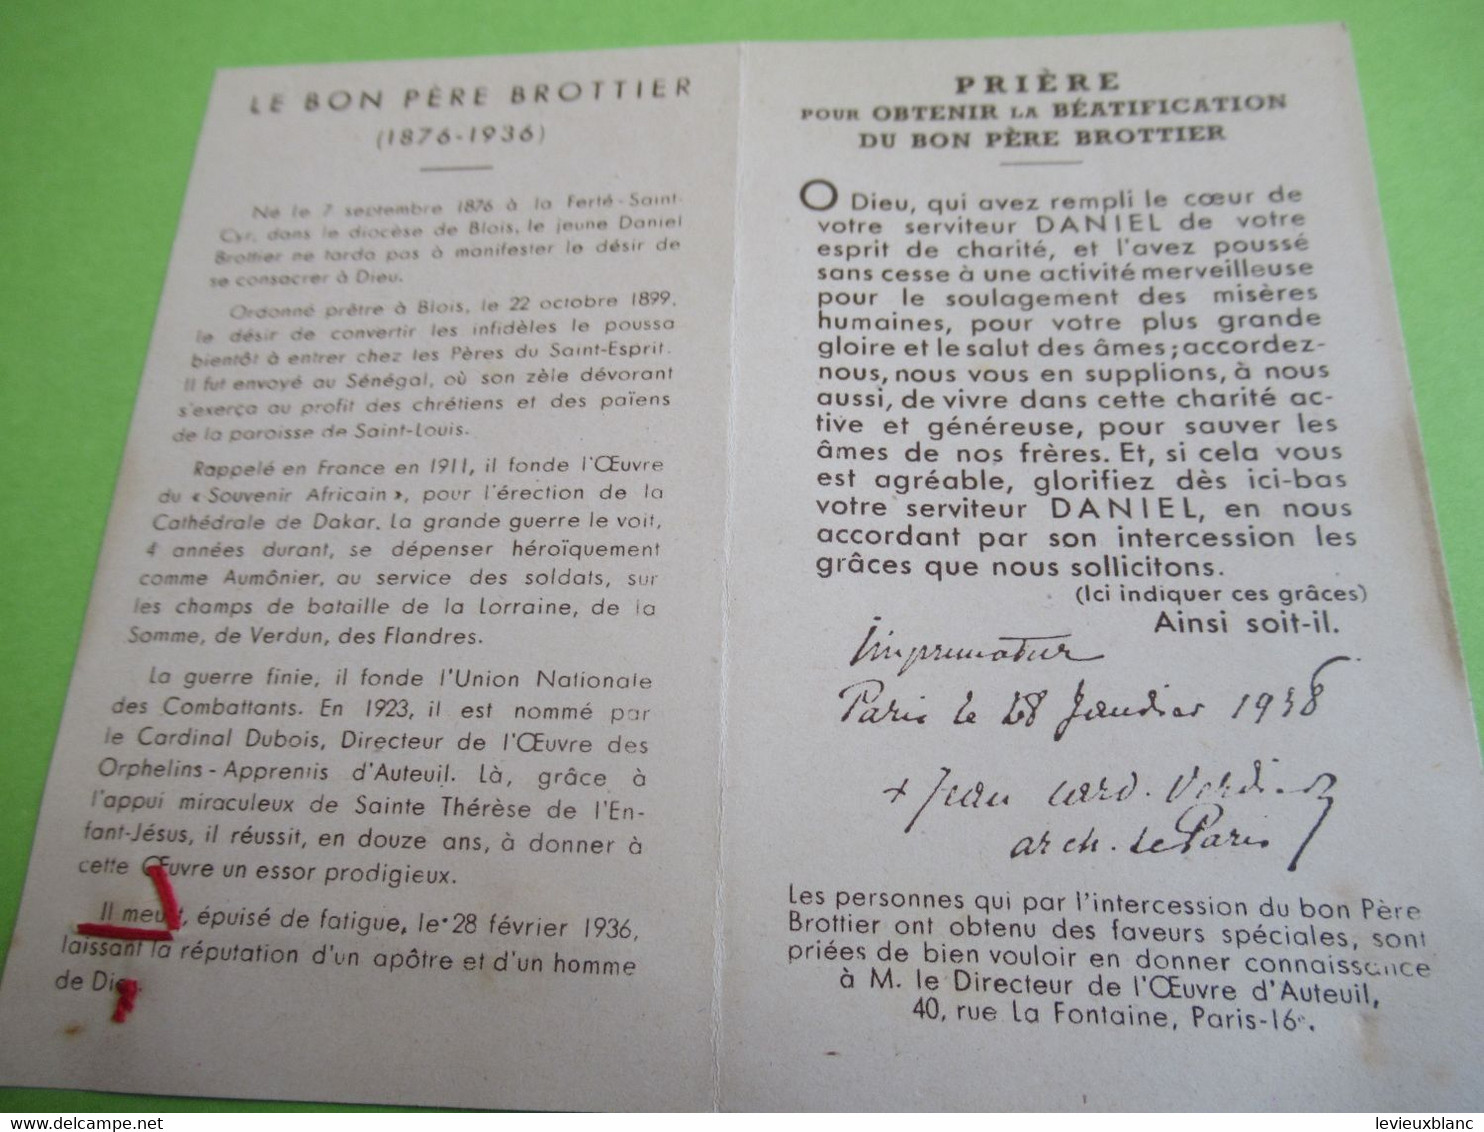 Image Pieuse Ancienne/Le Pére Daniel Brottier/Etoffe Ayant Touché/Cardinal Verdier Archevêque De Paris/1938   IMP106ter - Religion & Esotérisme